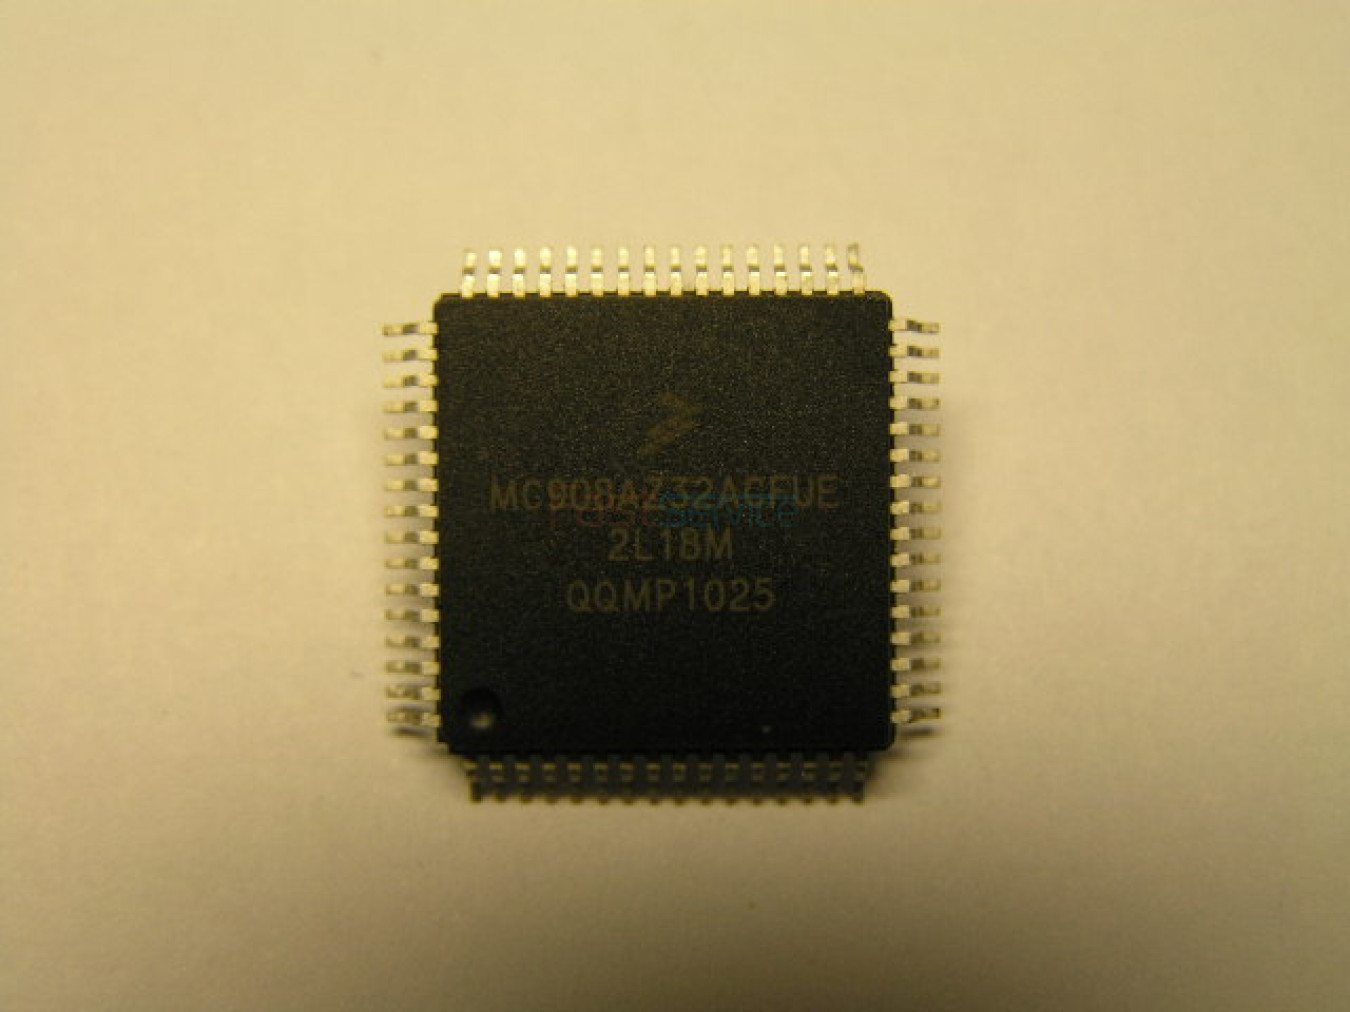 Процессор на СМА Bosch Siemens MC908AZ32ACFUE чистый